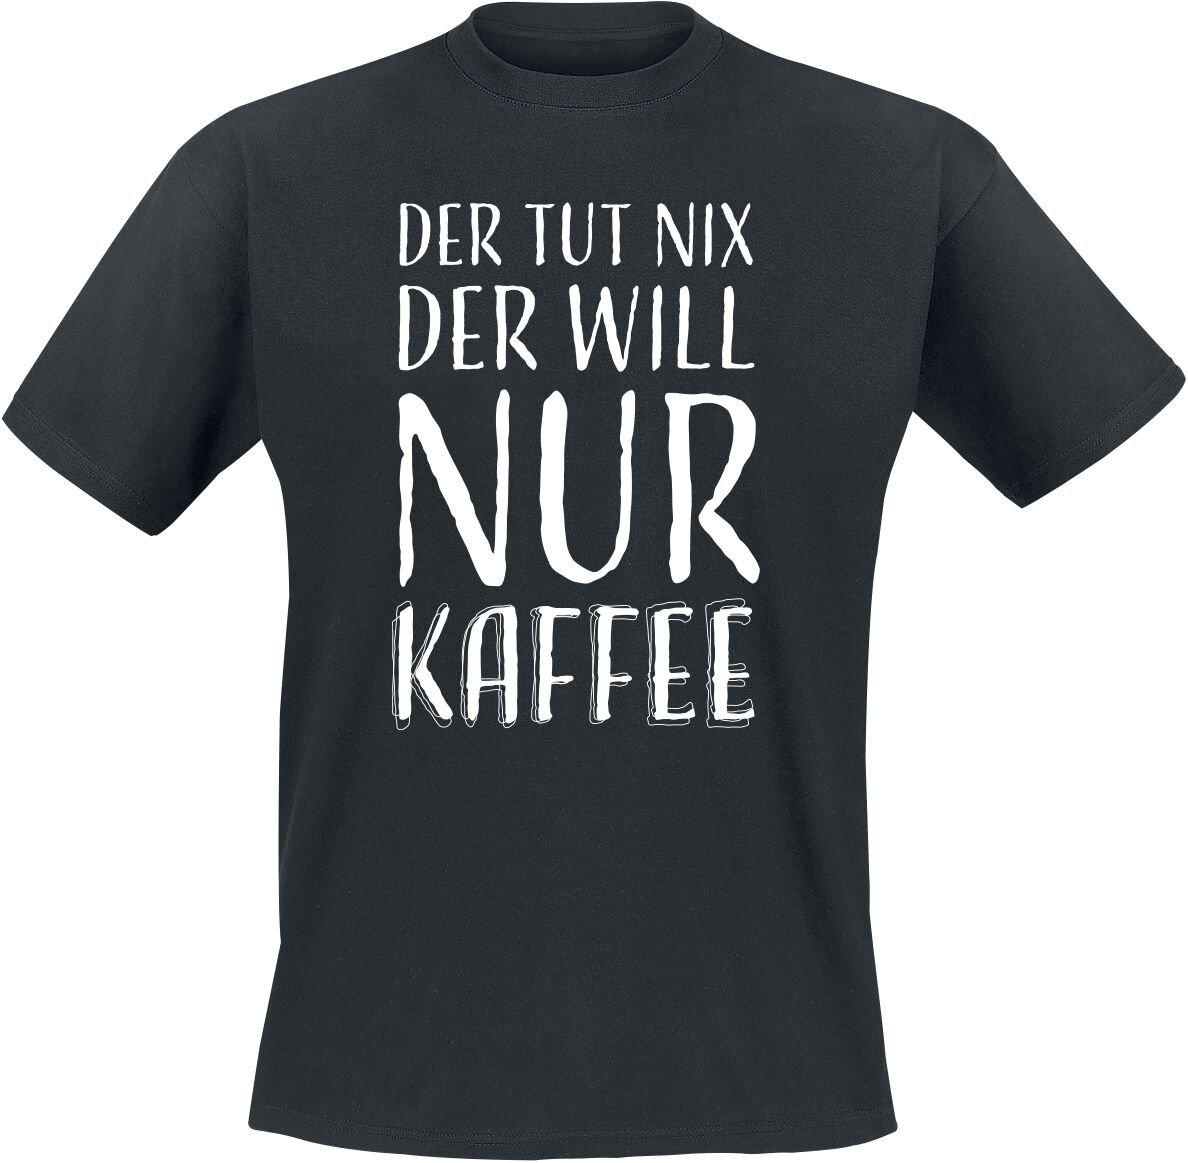 Sprüche T-Shirt - Der tut nix der will nur Kaffee - S bis 3XL - für Männer - Größe 3XL - schwarz